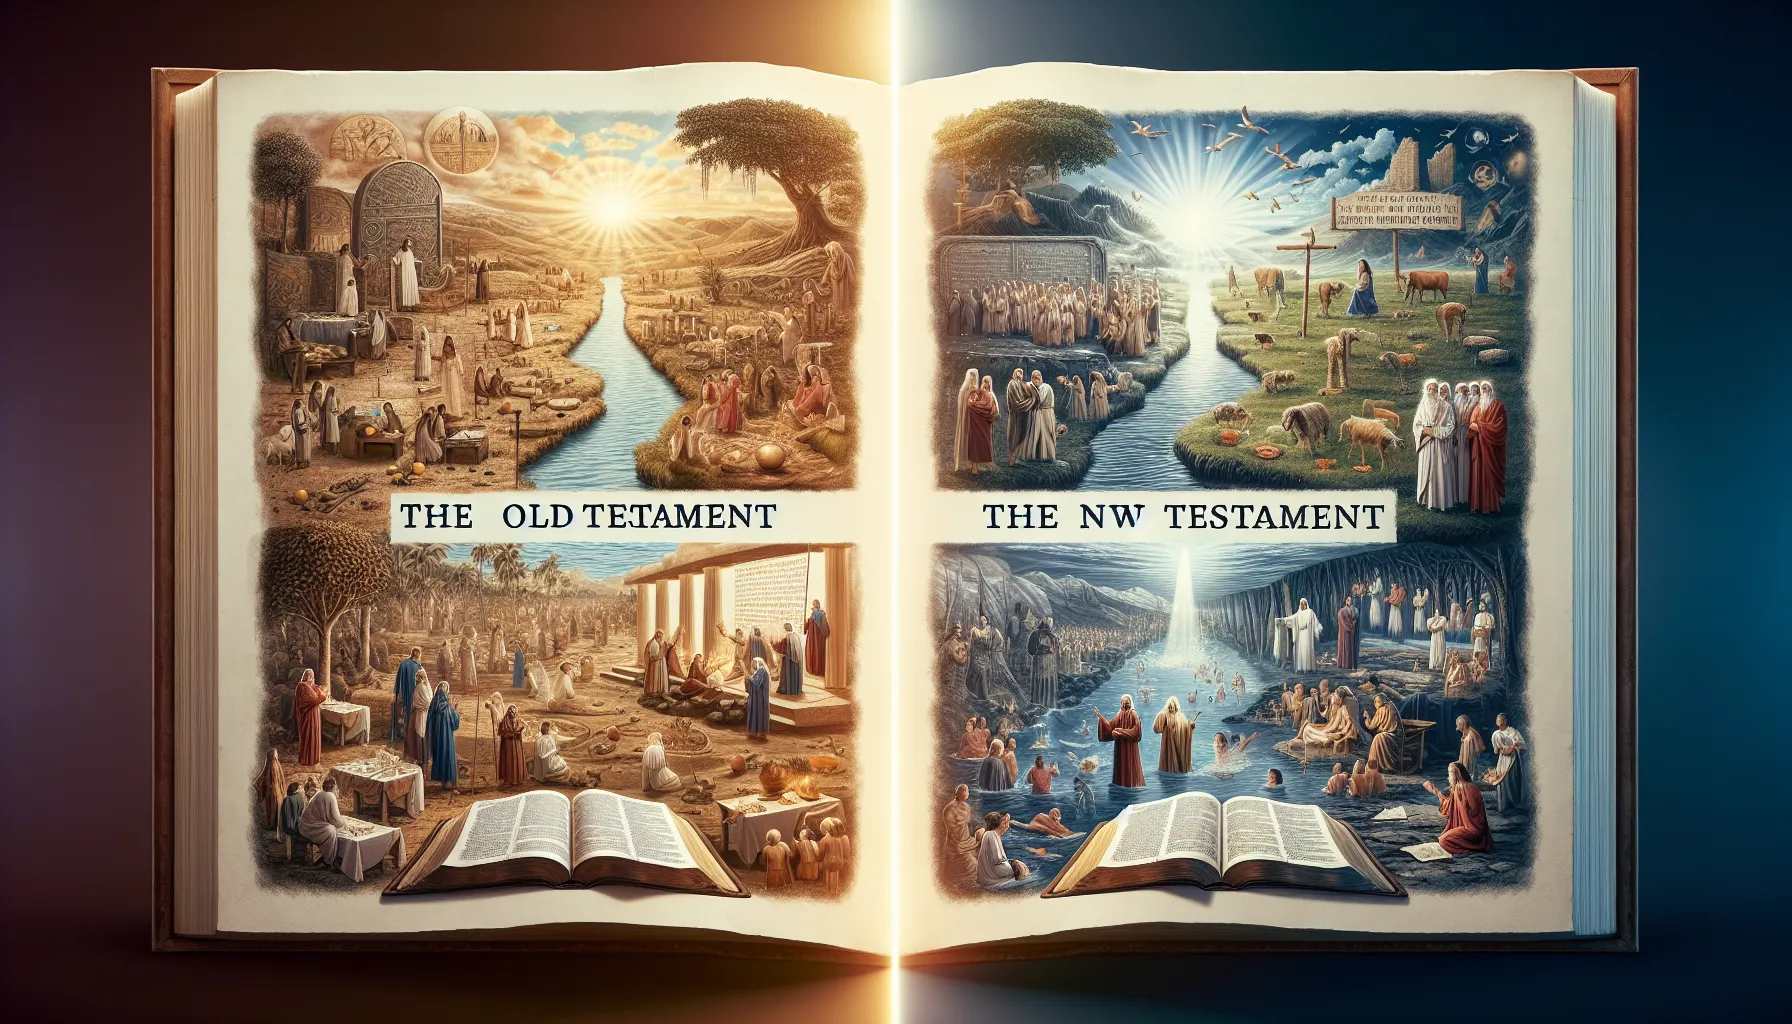 Comparación entre el Antiguo y el Nuevo Testamento: descubre las diferencias clave en la historia y enseñanzas de la Biblia.